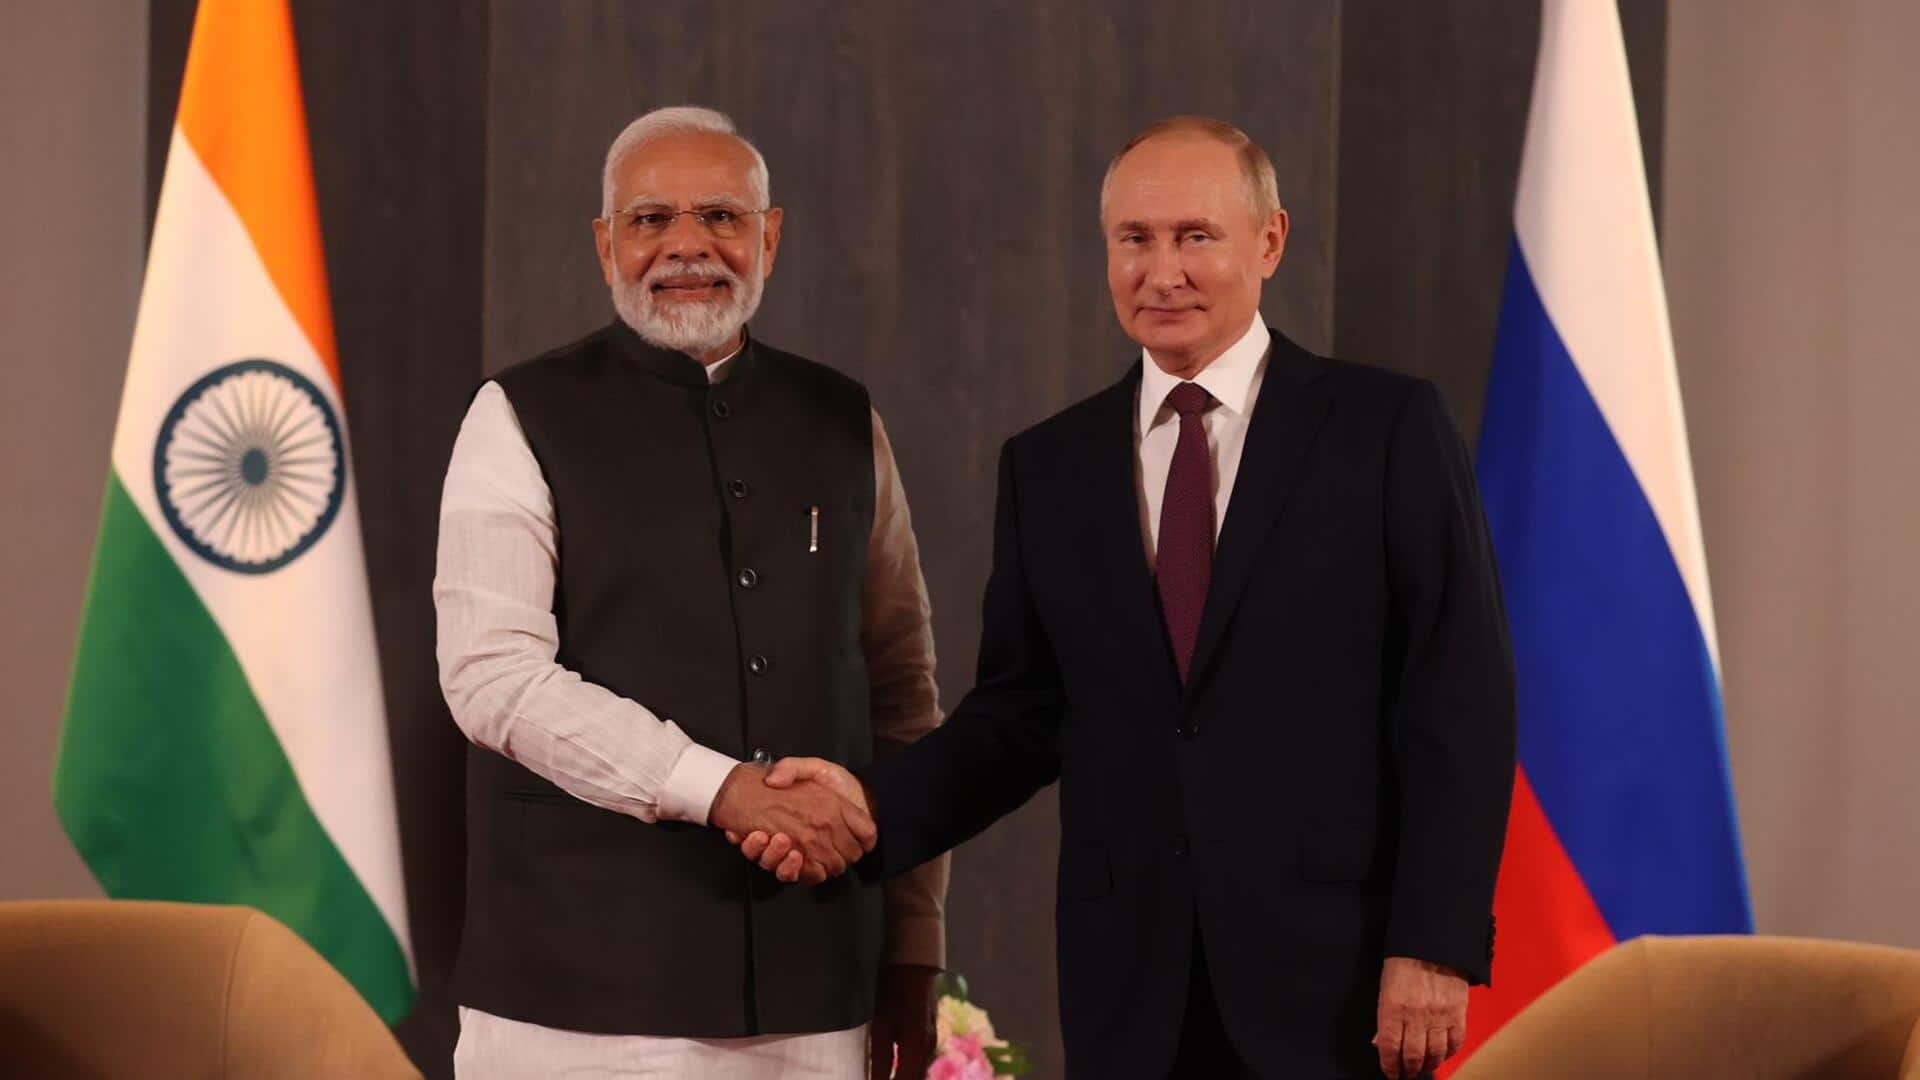 प्रधानमंत्री नरेंद्र मोदी 8 जुलाई को रूस यात्रा पर जाएंगे, 5 साल बाद करेंगे दौरा